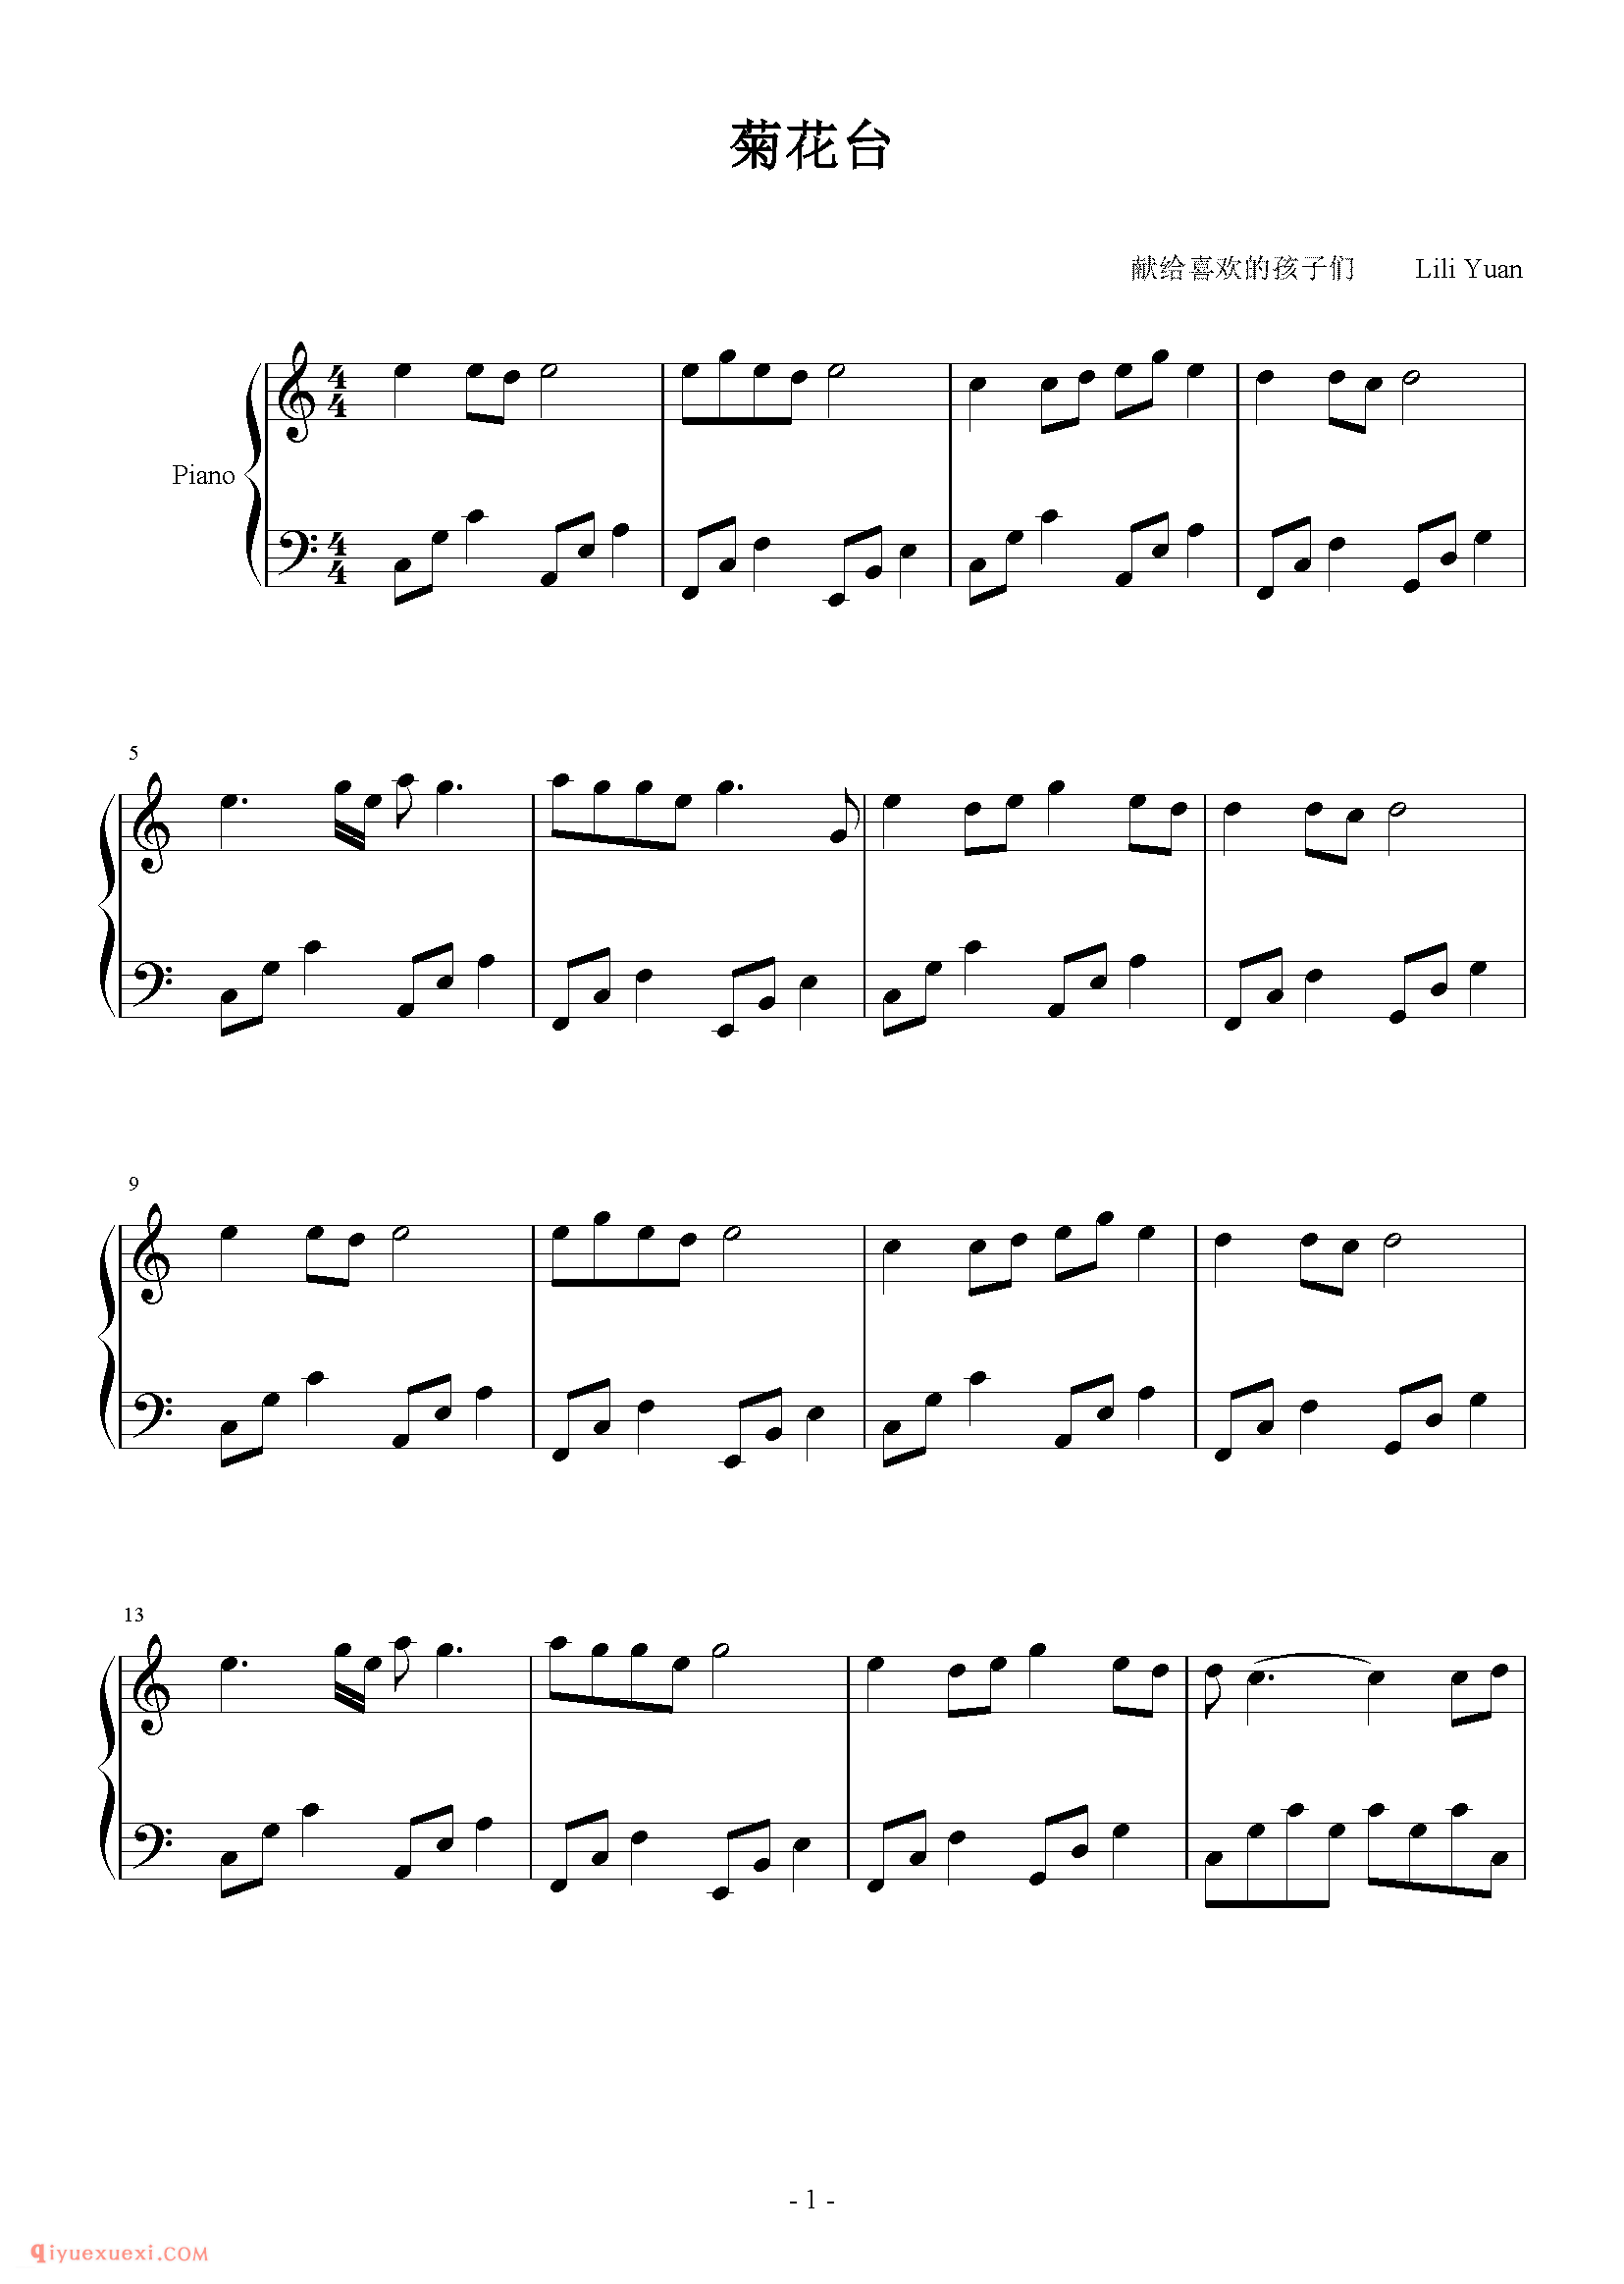 复杂电子琴曲目 | 菊花台(五线谱)